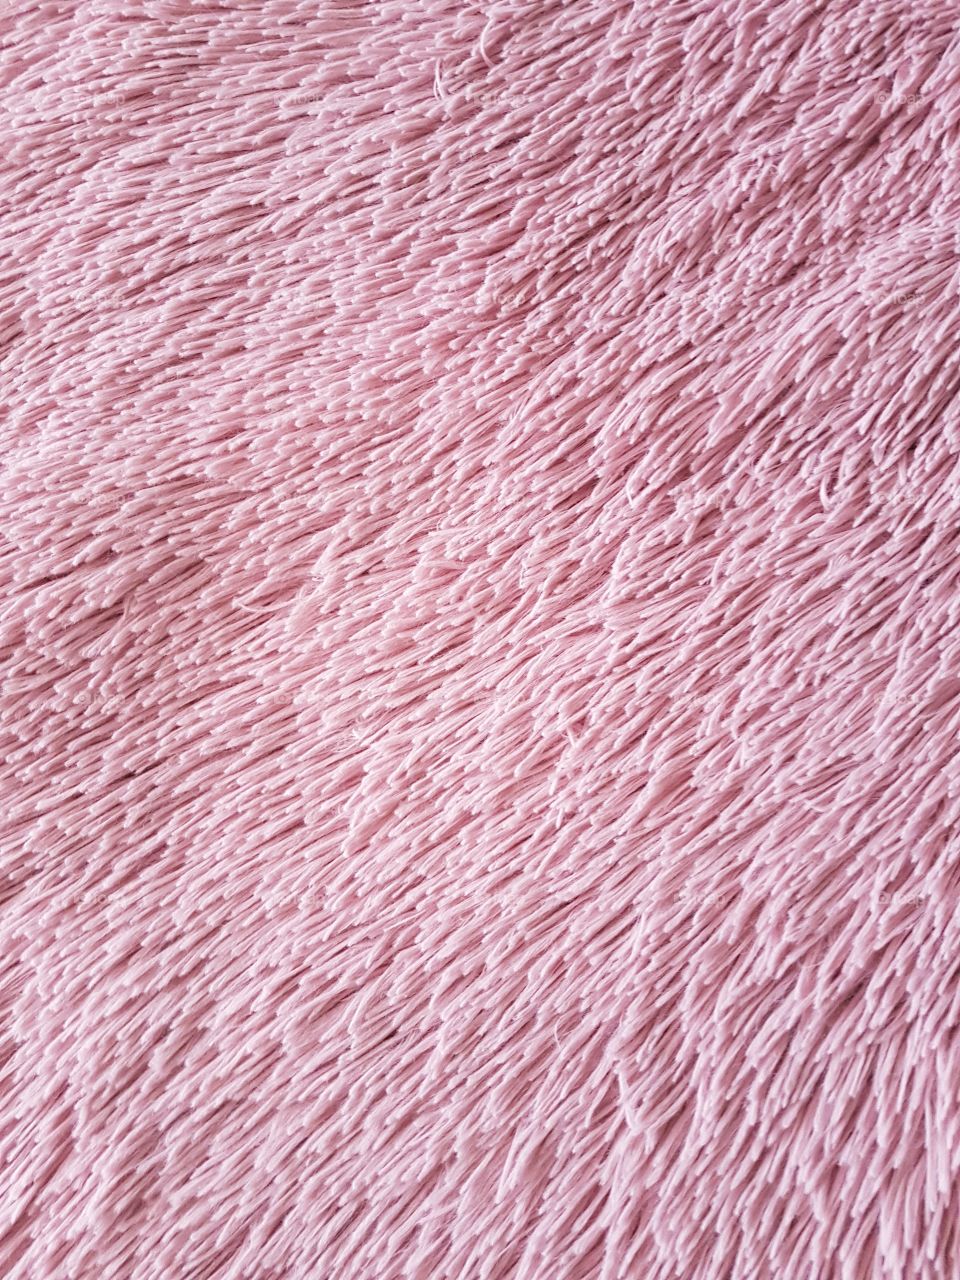 Full frame of pink fluffy carpet